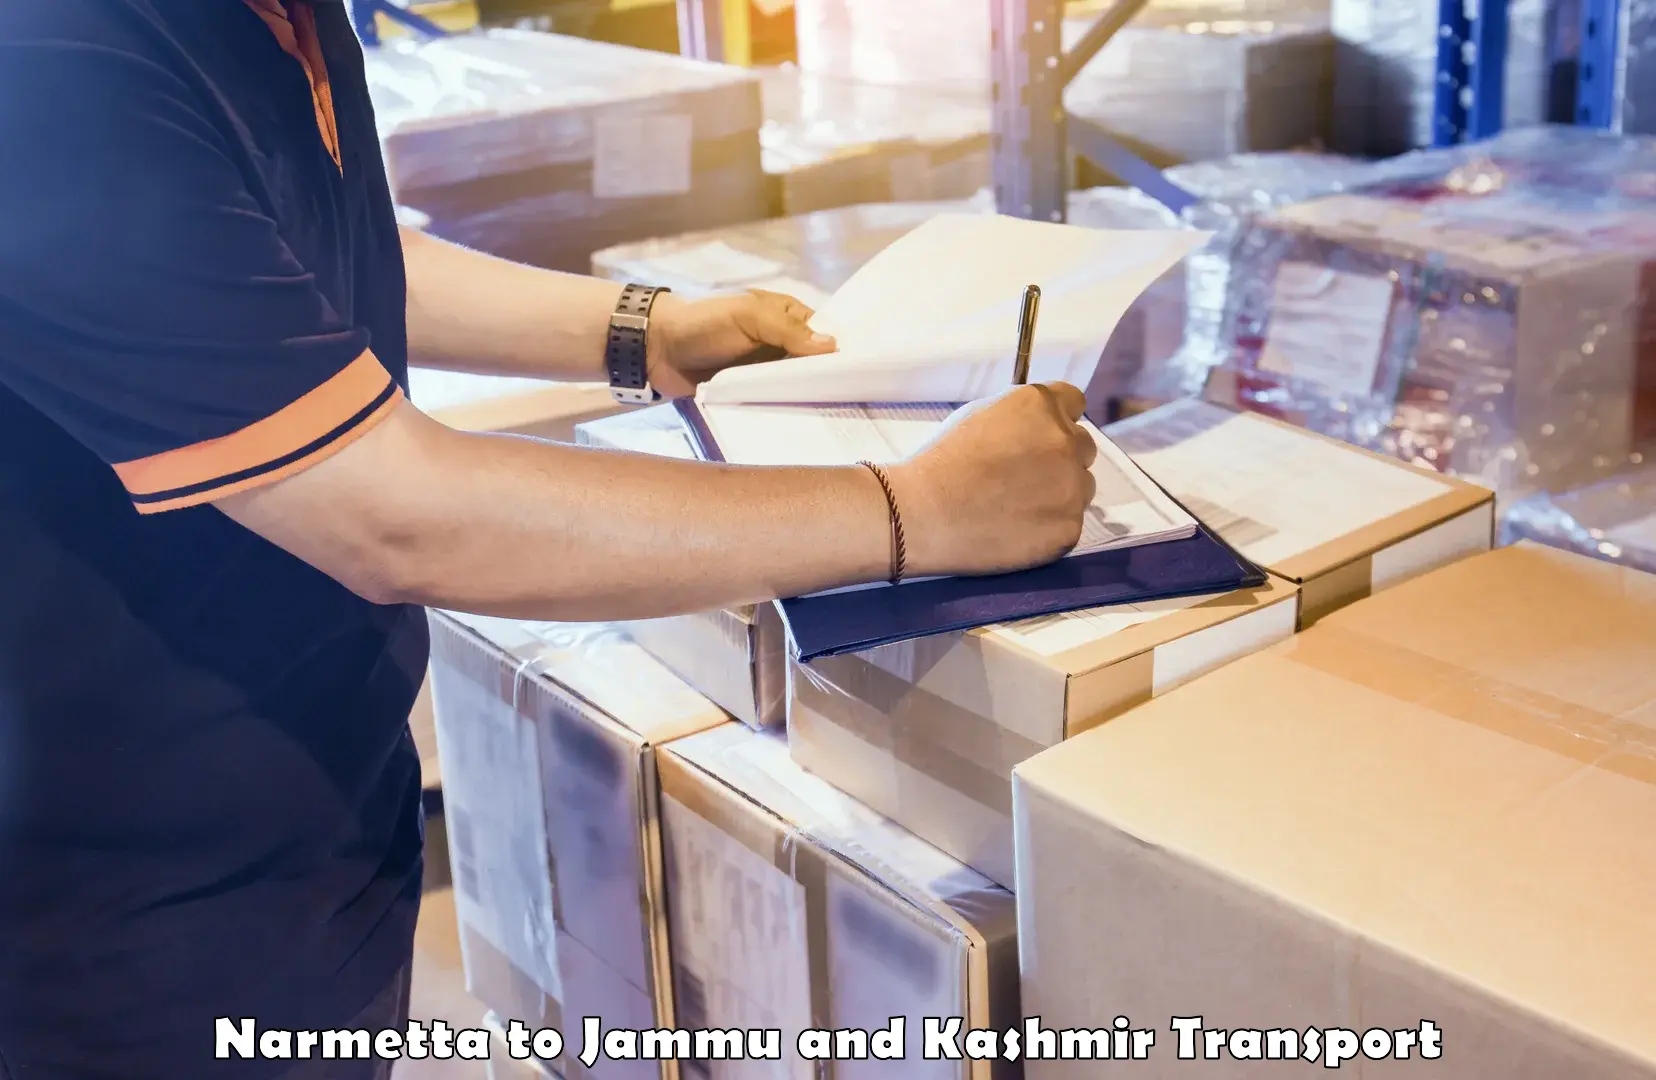 Logistics transportation services in Narmetta to Srinagar Kashmir